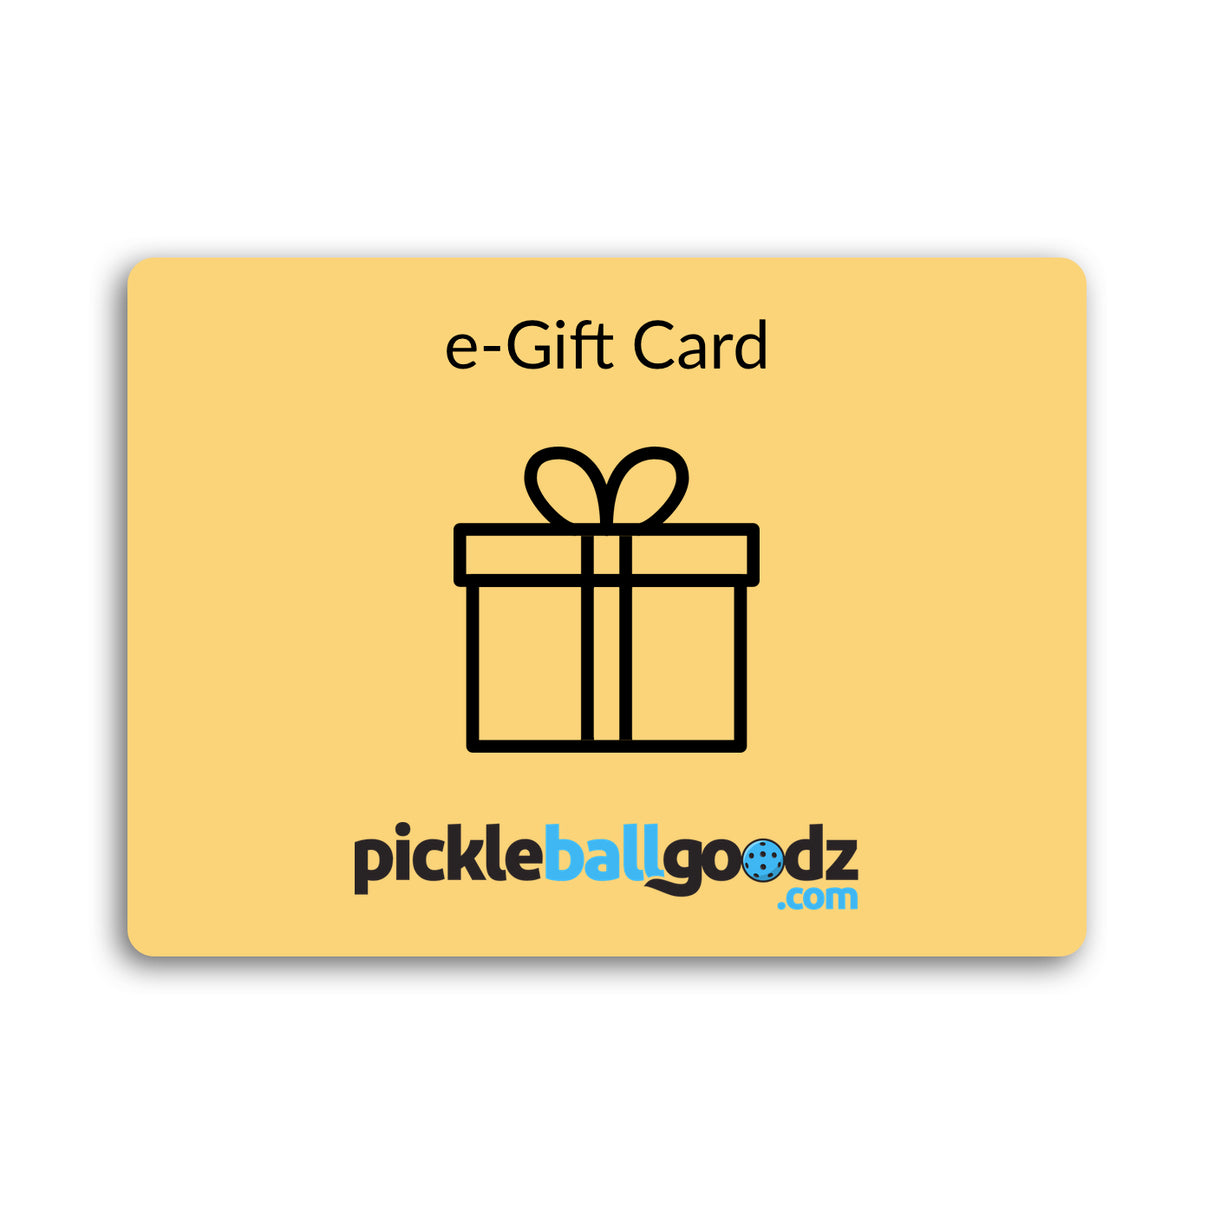 Pickleball Goodz e-Gift Card